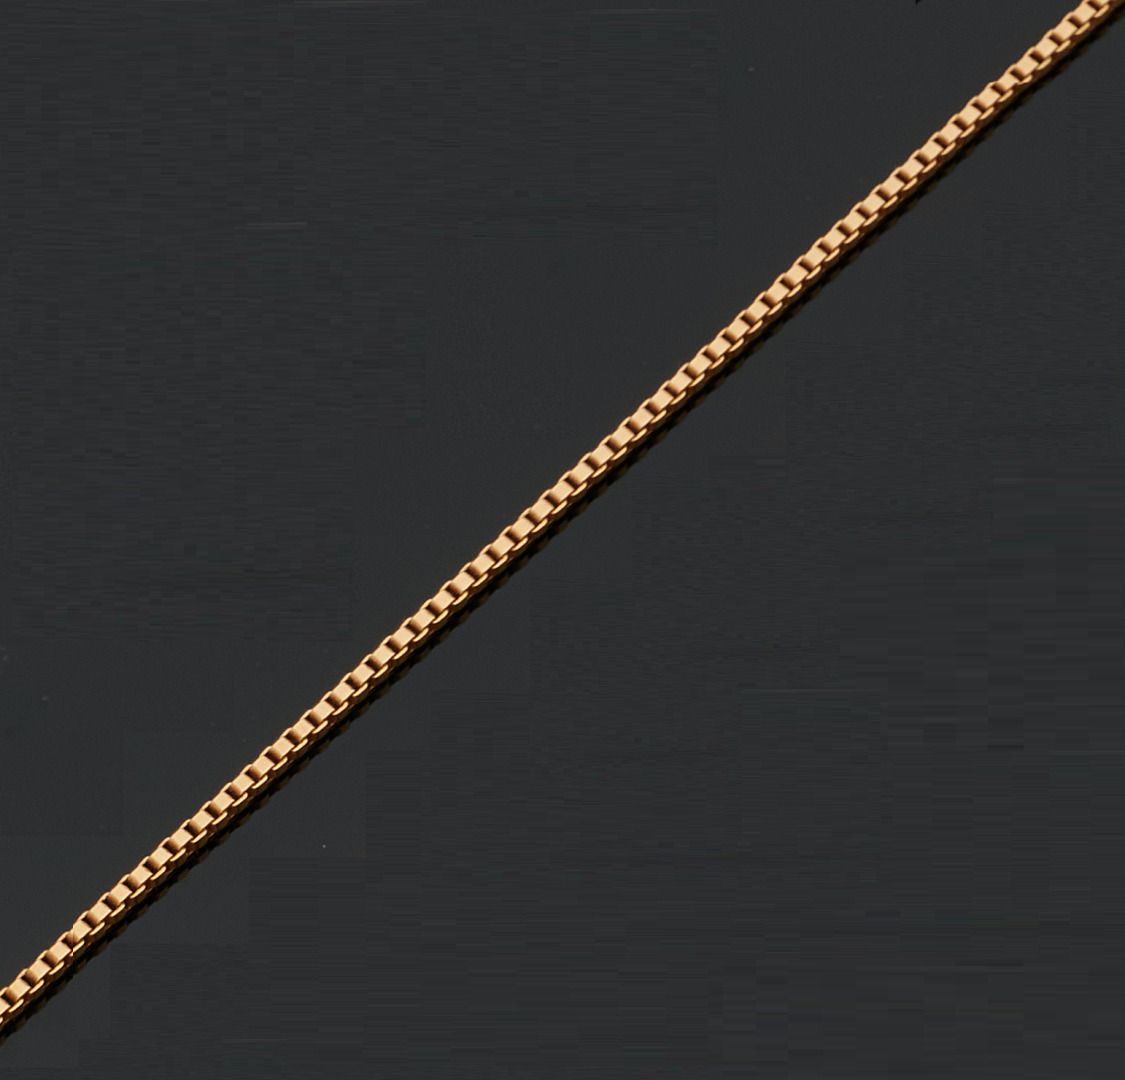 Null 750千分之一黄金铰链项链，威尼斯式链接。
长度： 52 cm
毛重 : 14,1 g